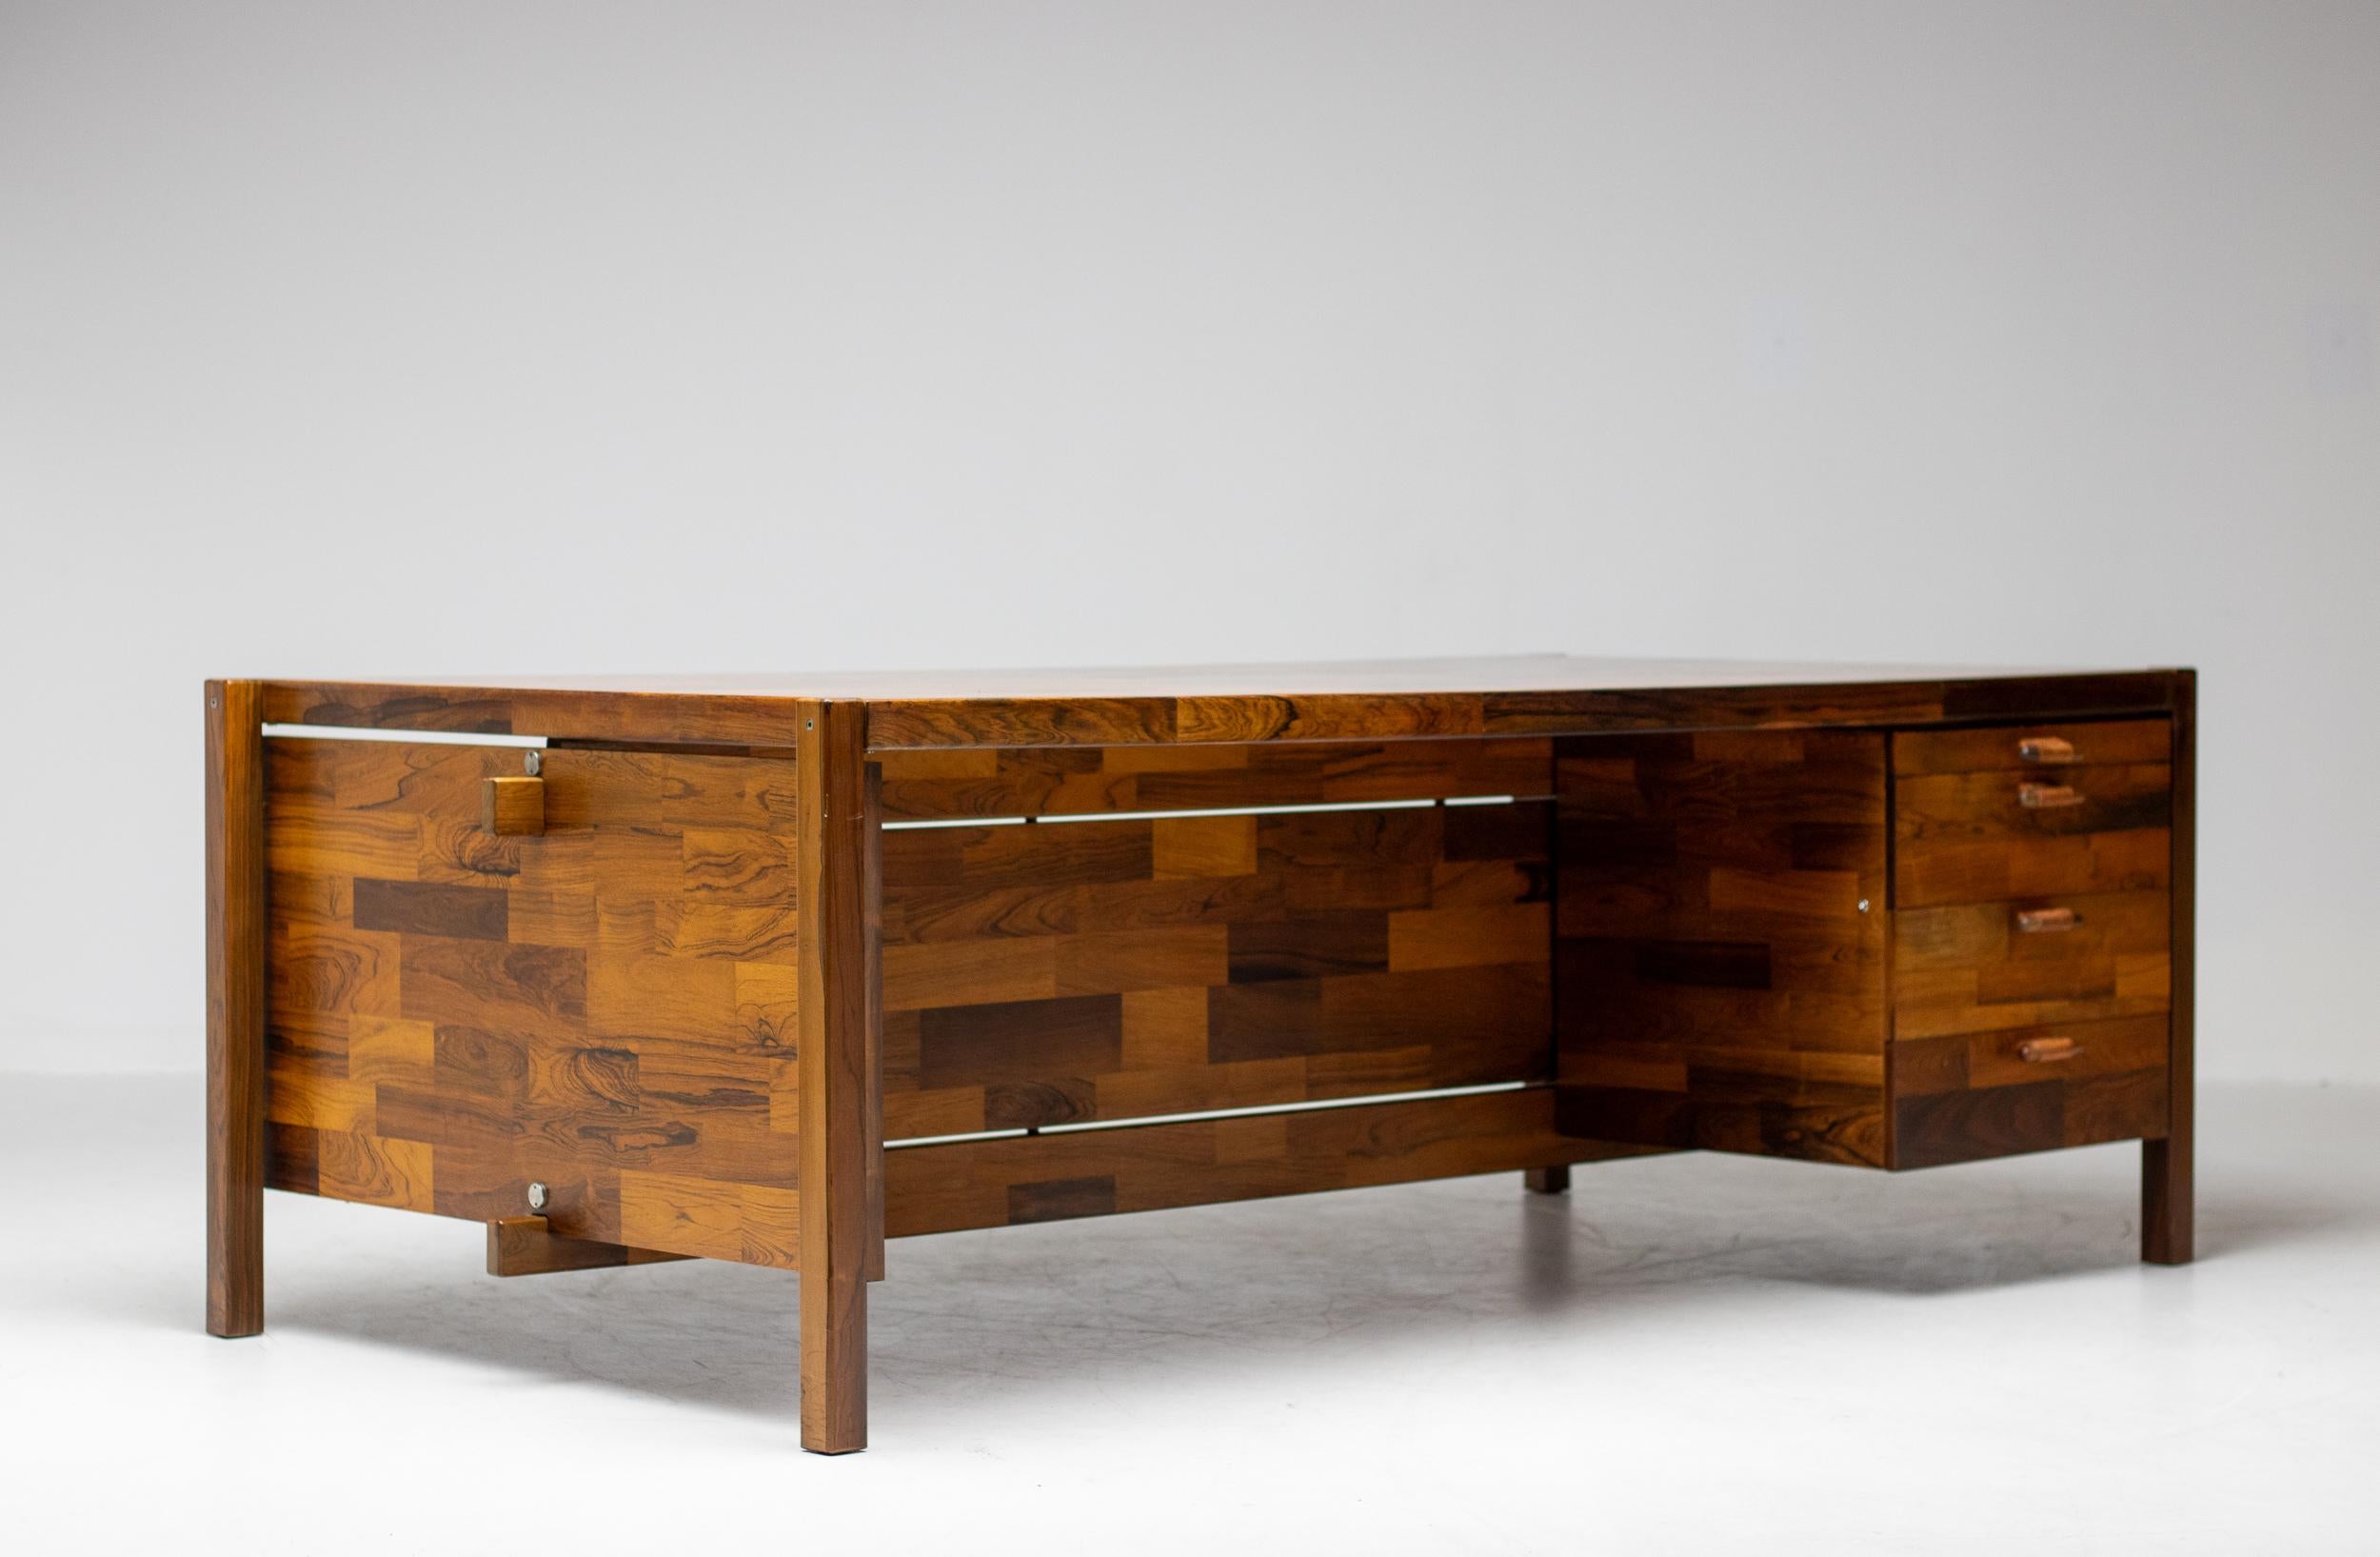 Schöner großer Schreibtisch, entworfen von Jorge Zalszupin, hergestellt von L'Atelier San Paulo, um 1960. 
Hergestellt aus hochwertigem Jacaranda-Holz. Der Schreibtisch hat vier Schubladen mit sehr gut verarbeiteten Griffen aus Jacarandaholz und